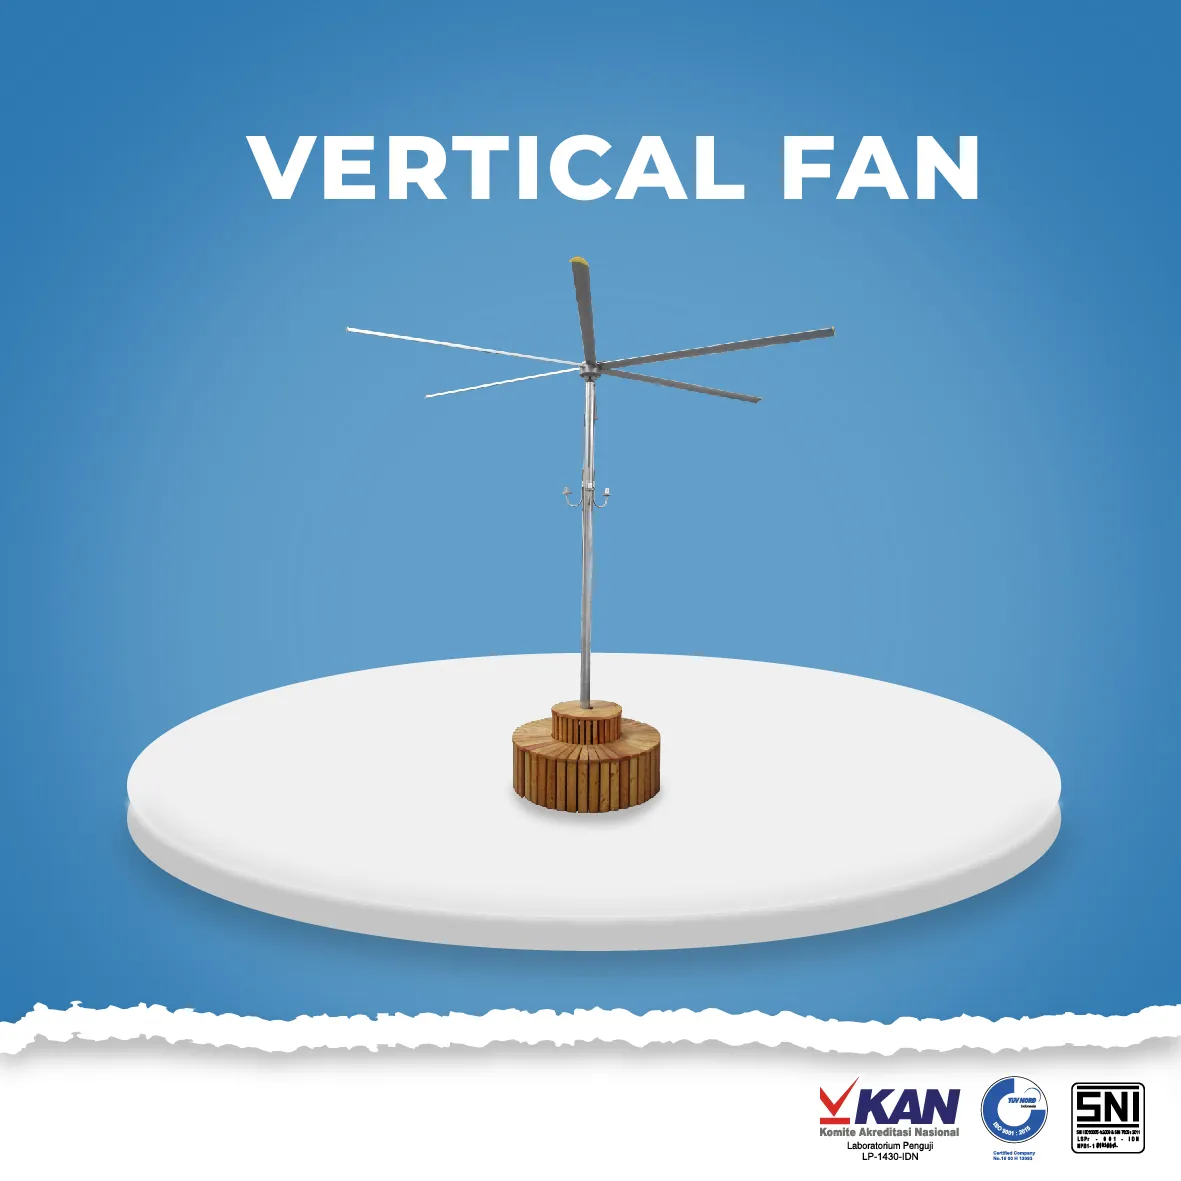  Vertical Fan other fan template cover website 01